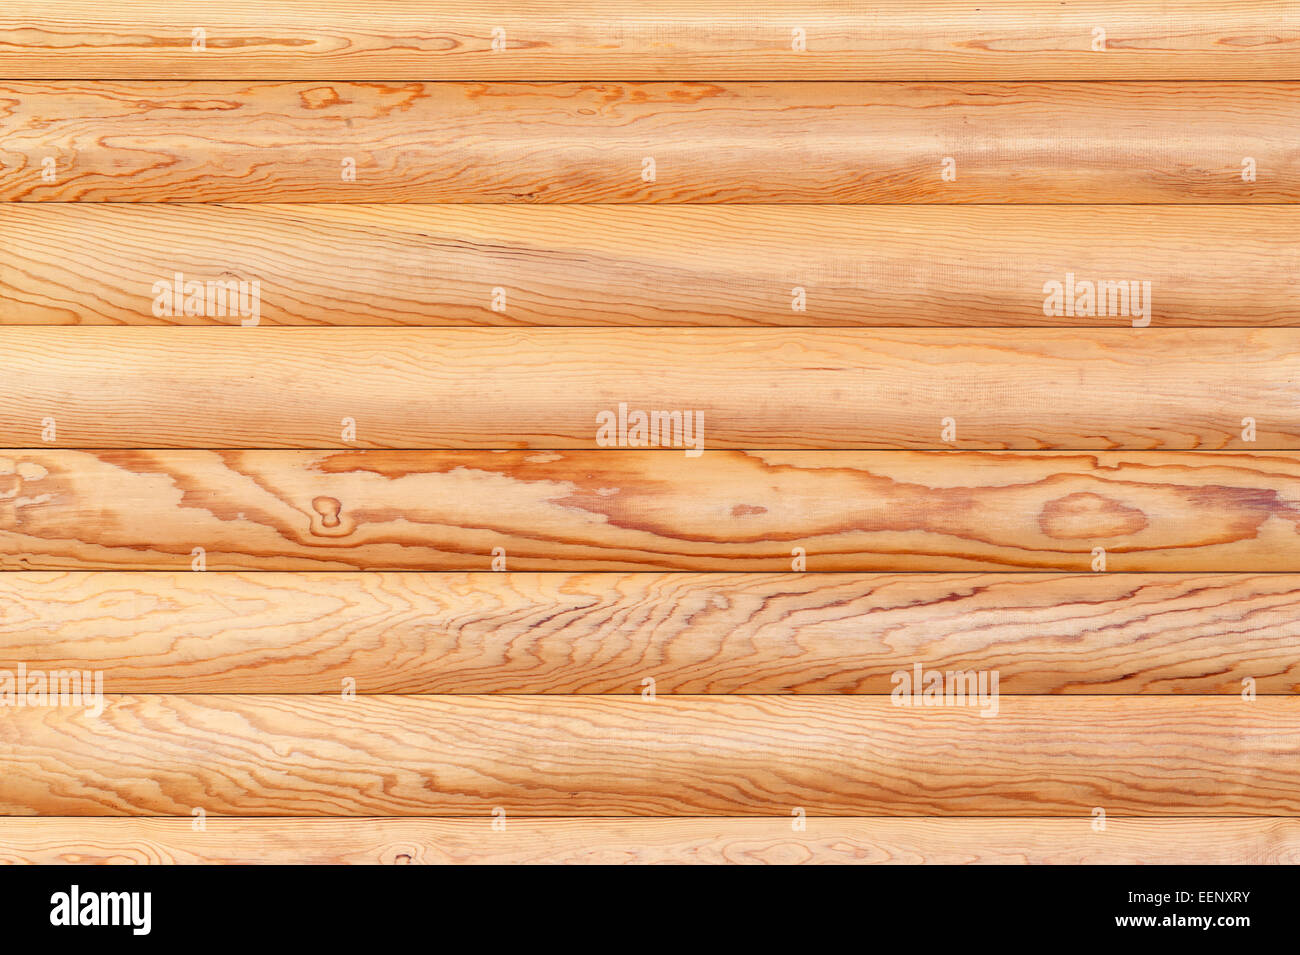 Journal de fond naturel de mur. La texture du sol en bois de sciage. Banque D'Images